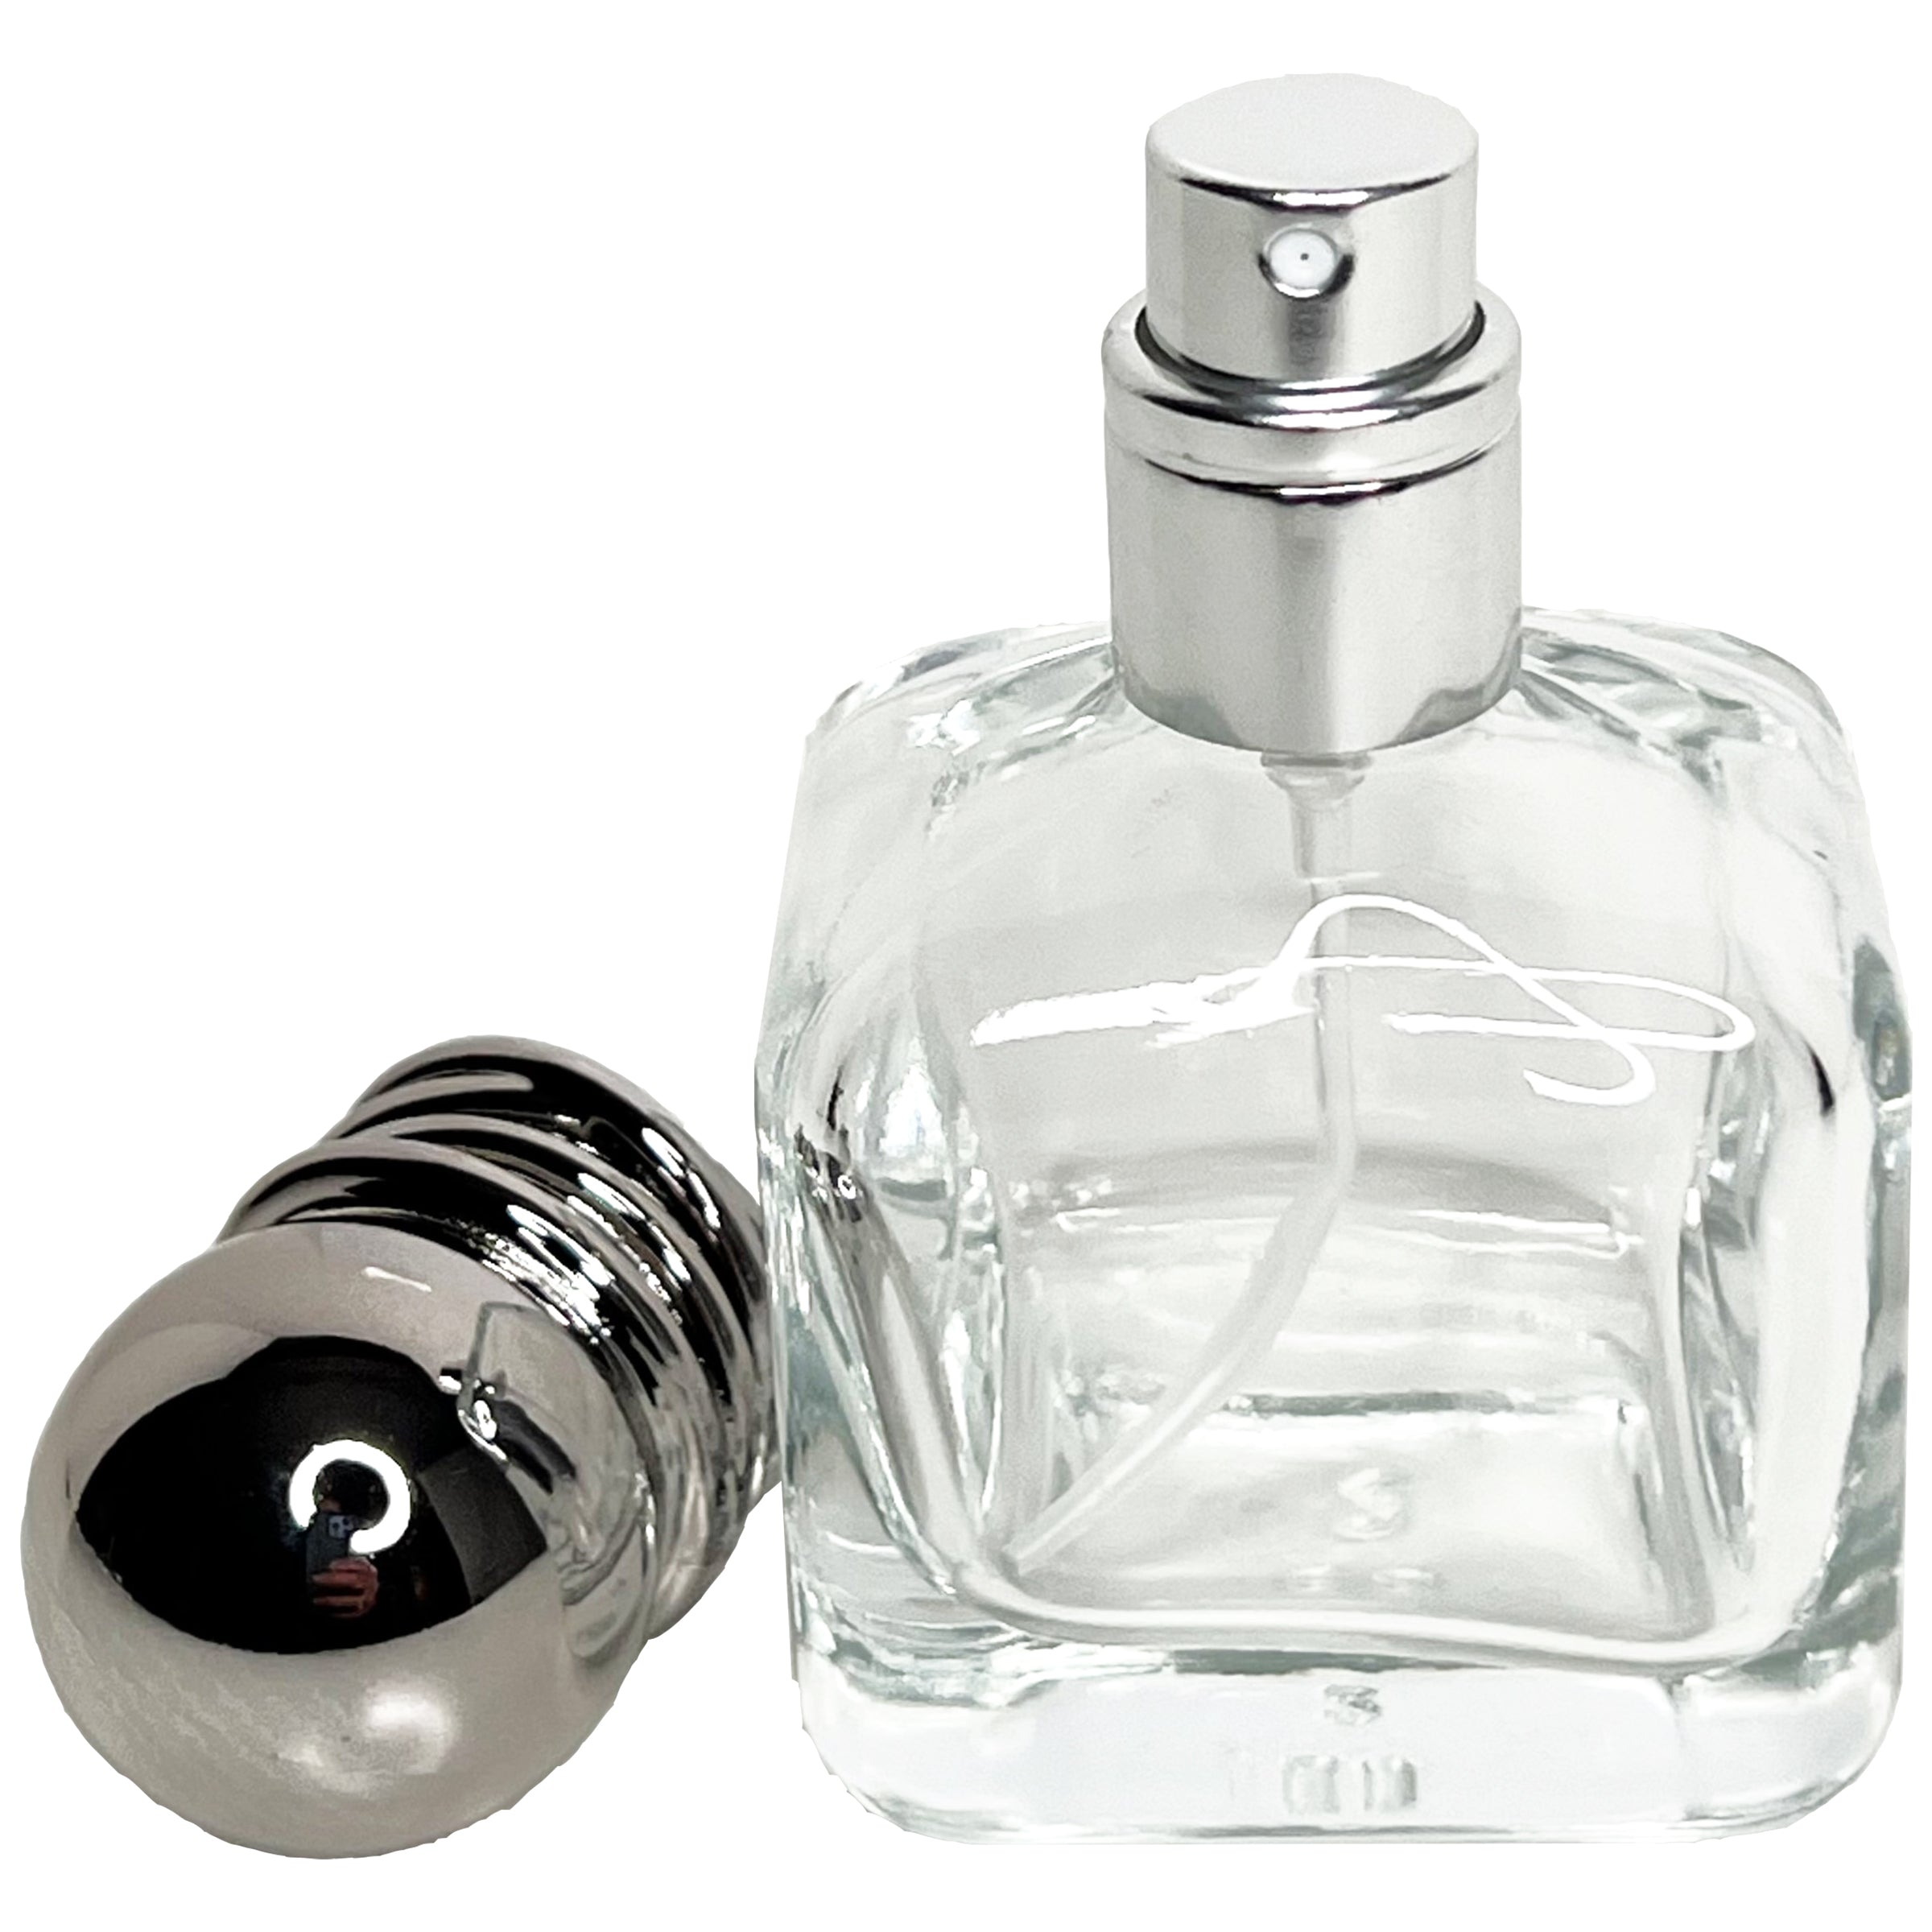 30ml 1oz shaker glass perfume spray bottles